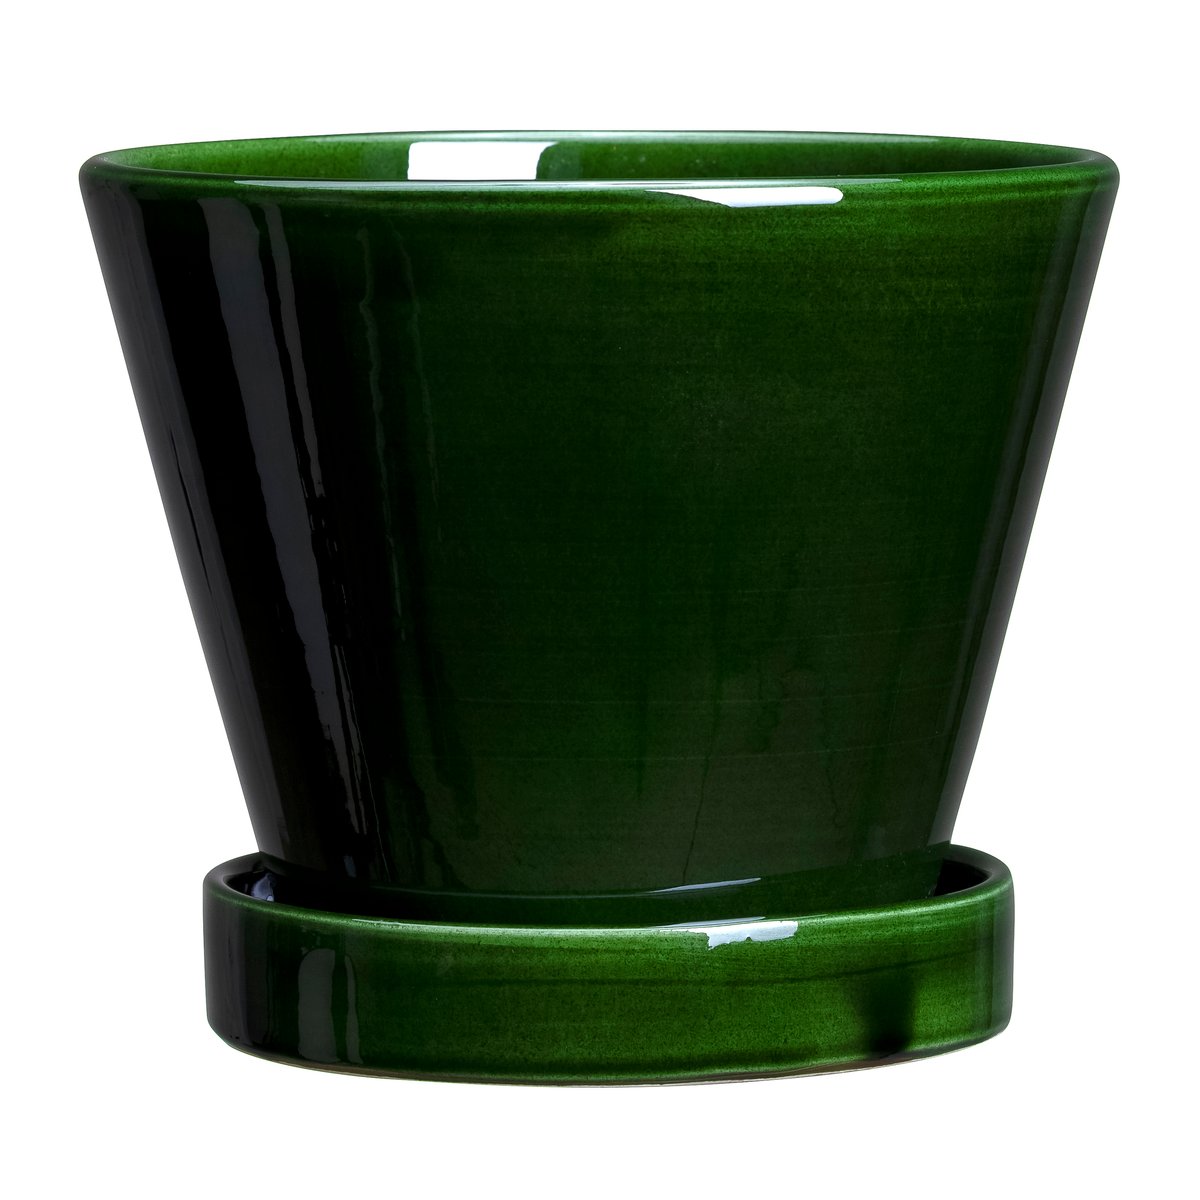 Bergs Potter Julie krukke glaseret Ø11 cm Green emerald